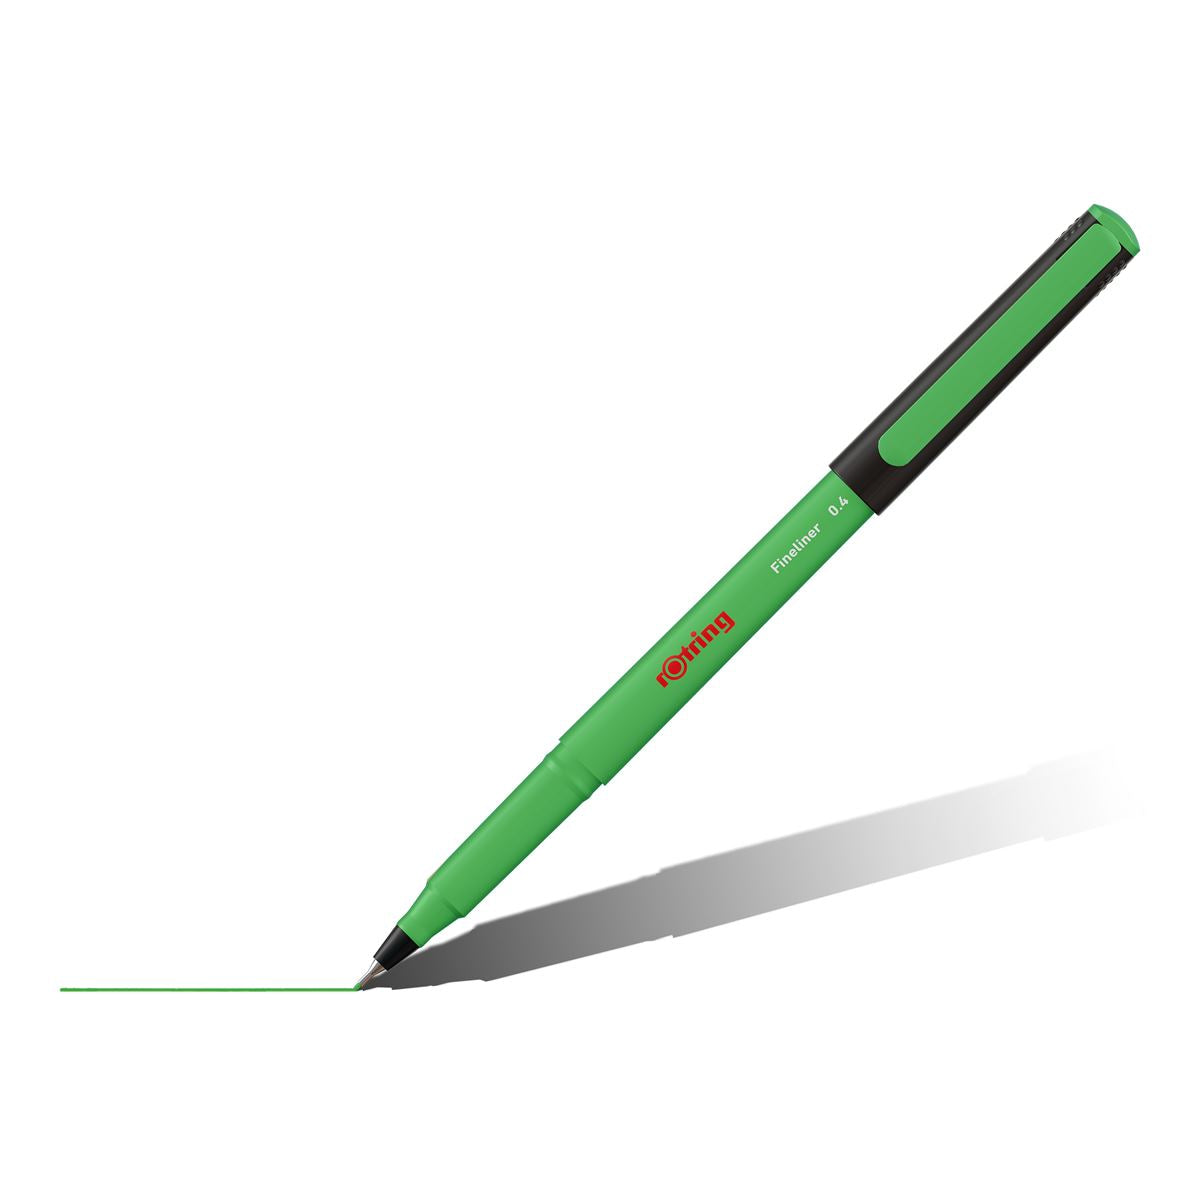 Rotring Liner Fineliner Pens 0.4 mm - Pack of 4